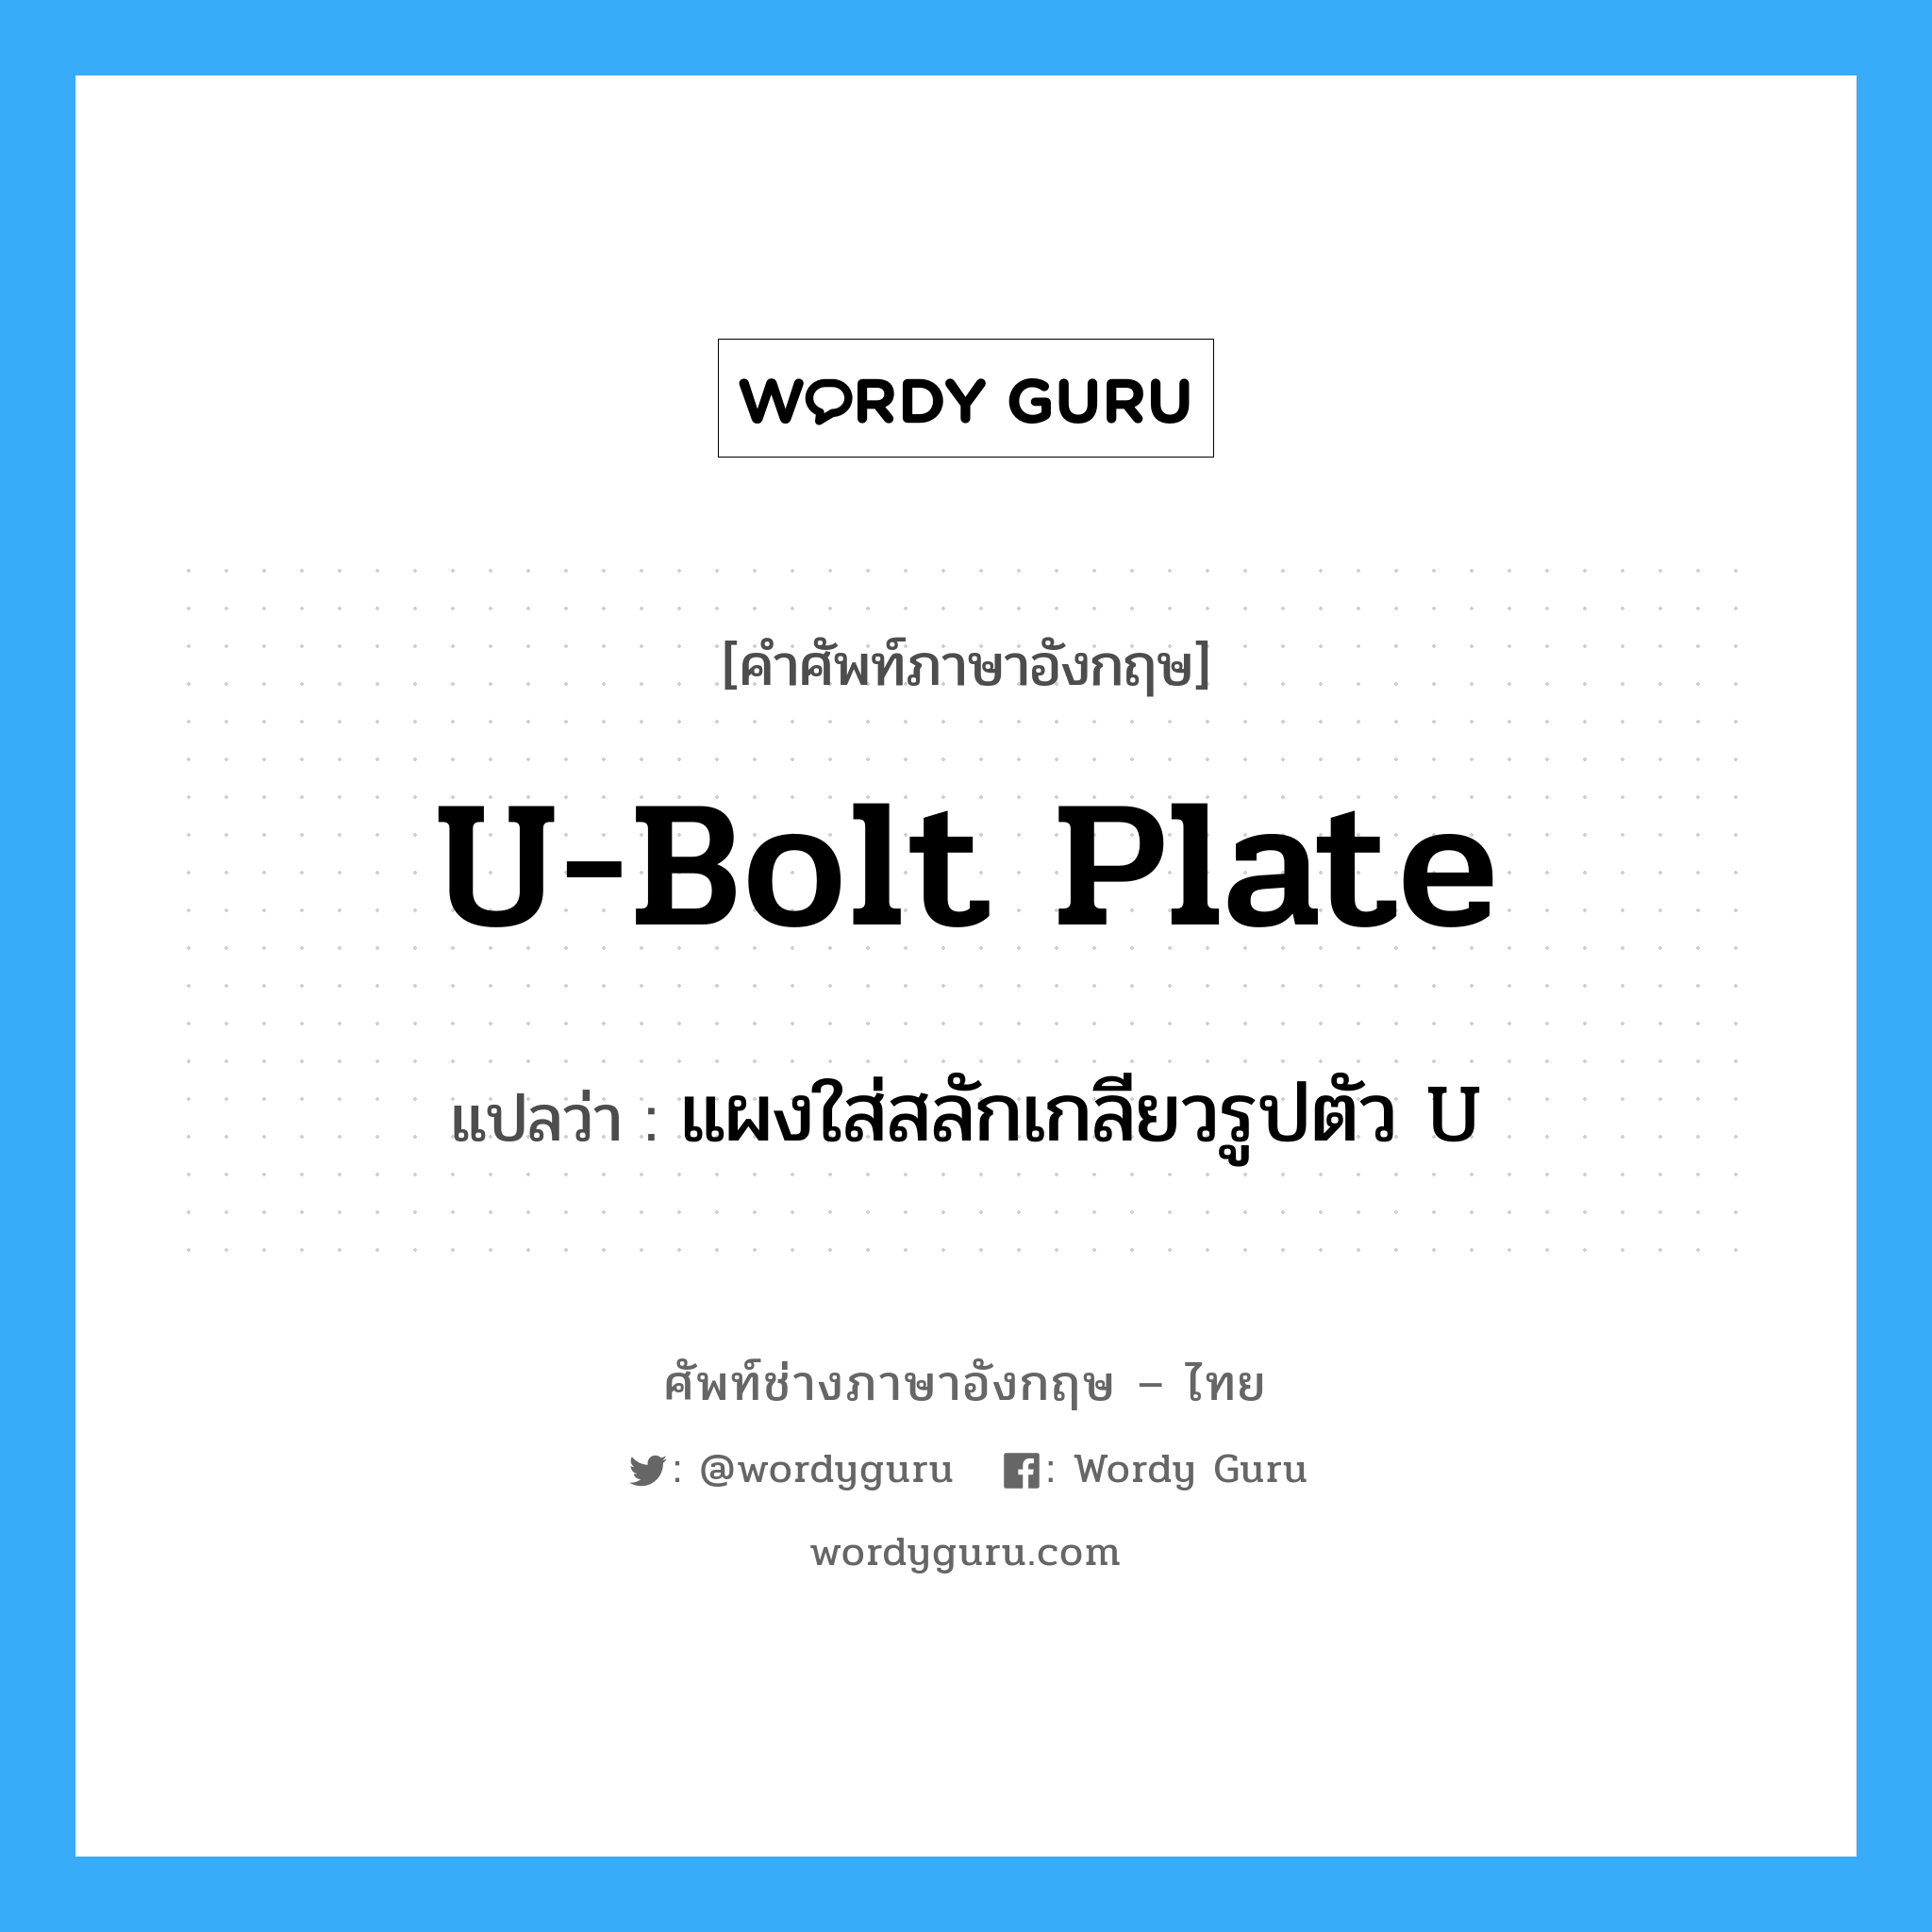 U-bolt plate แปลว่า?, คำศัพท์ช่างภาษาอังกฤษ - ไทย U-bolt plate คำศัพท์ภาษาอังกฤษ U-bolt plate แปลว่า แผงใส่สลักเกลียวรูปตัว U